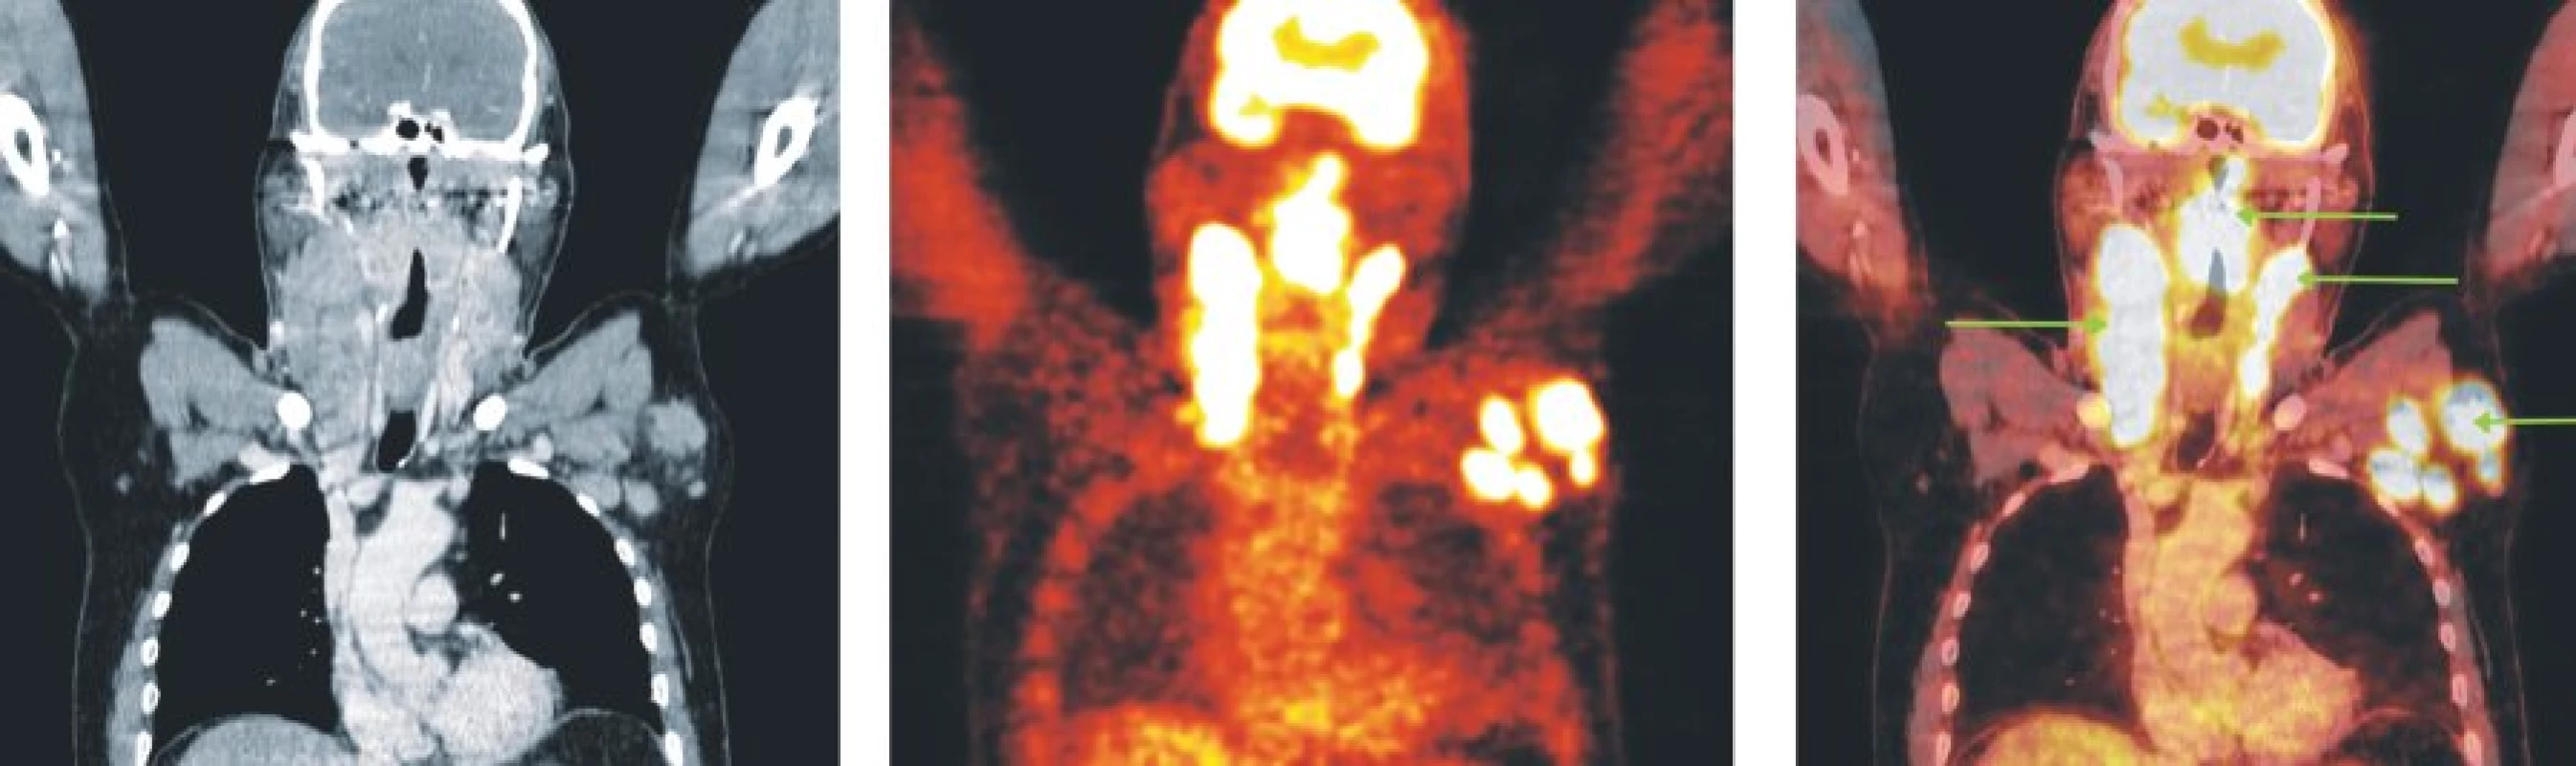 Snímky výpočetní tomografie (CT), pozitronové emisní tomografie (PET) a PET/CT u nemocného s periferním T-buněčným lymfomem. Hypermetabolismus glukózy v oblasti nazofaryngu a orofaryngu, v paketech lymfatických uzlin oboustranně na krku a ve zvětšených lymfatických uzlinách levé axily.